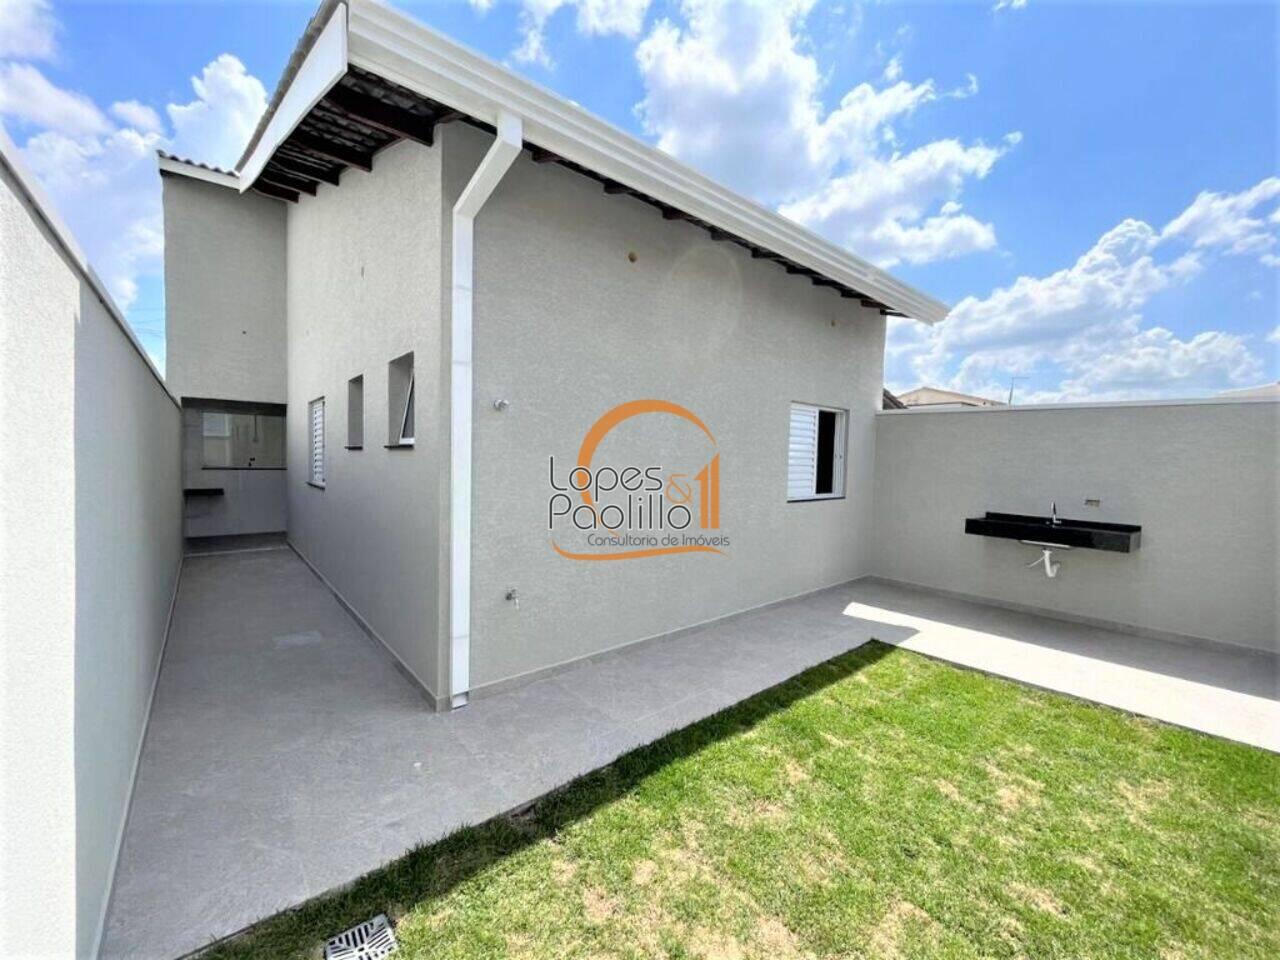 Casa Nova Atibaia, Atibaia - SP